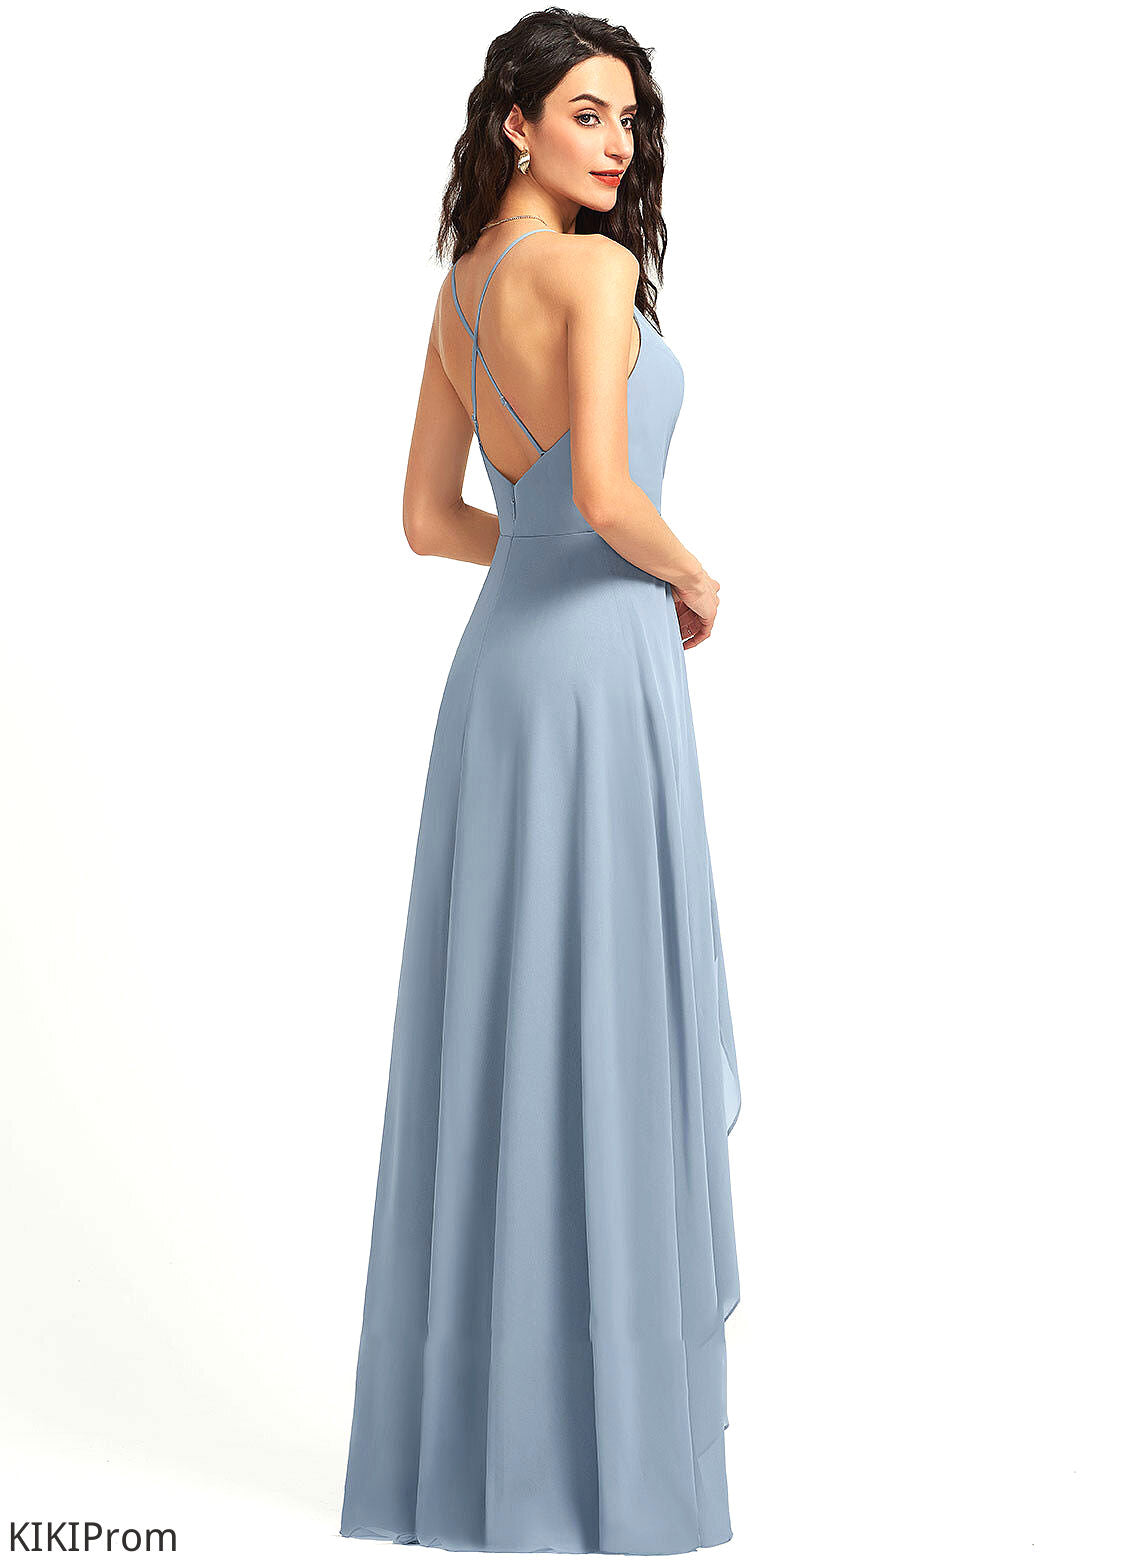 Length A-Line Straps Fabric Neckline Asymmetrical Silhouette V-neck Aria Natural Waist Sleeveless Off The Shoulder Bridesmaid Dresses